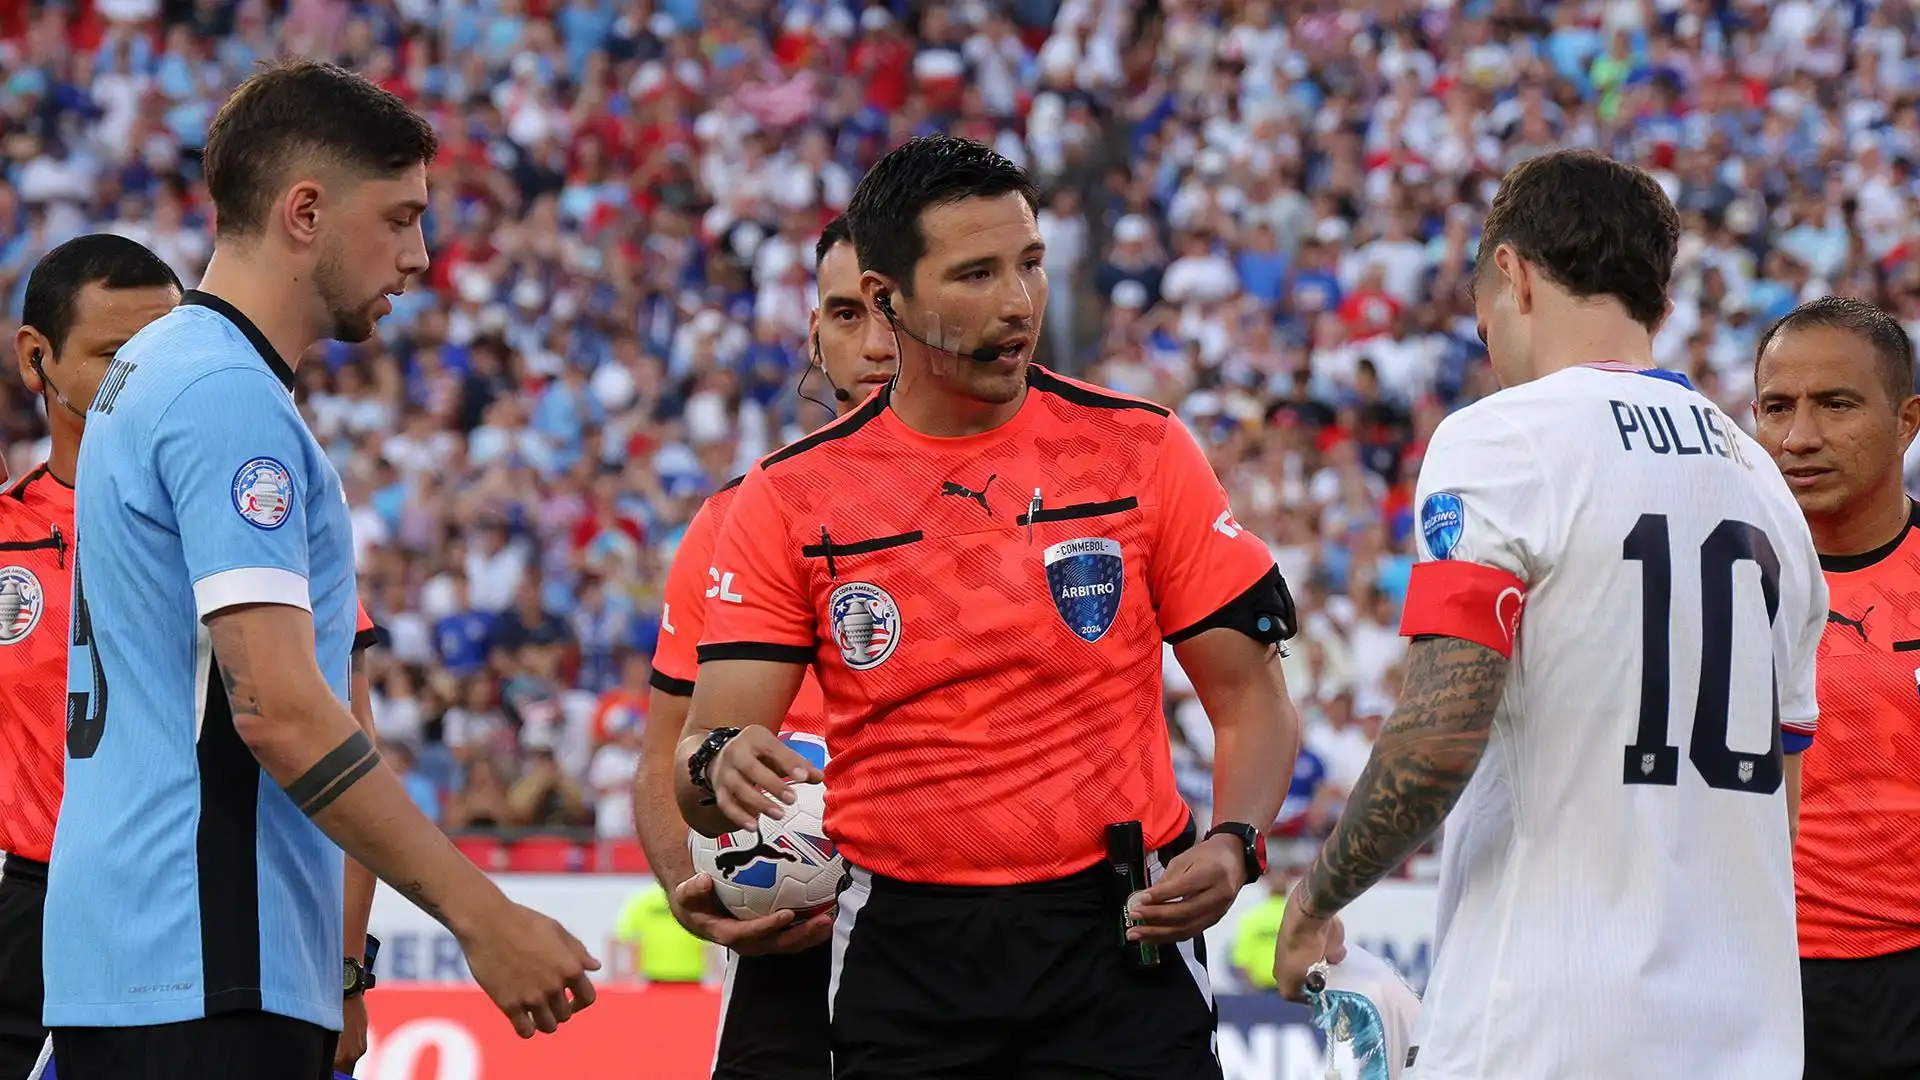 Gli Usa hanno perso per 1-0 contro l'Uruguay, in una partita segnata dalle controverse decisioni dell'arbitro Kevin Ortega